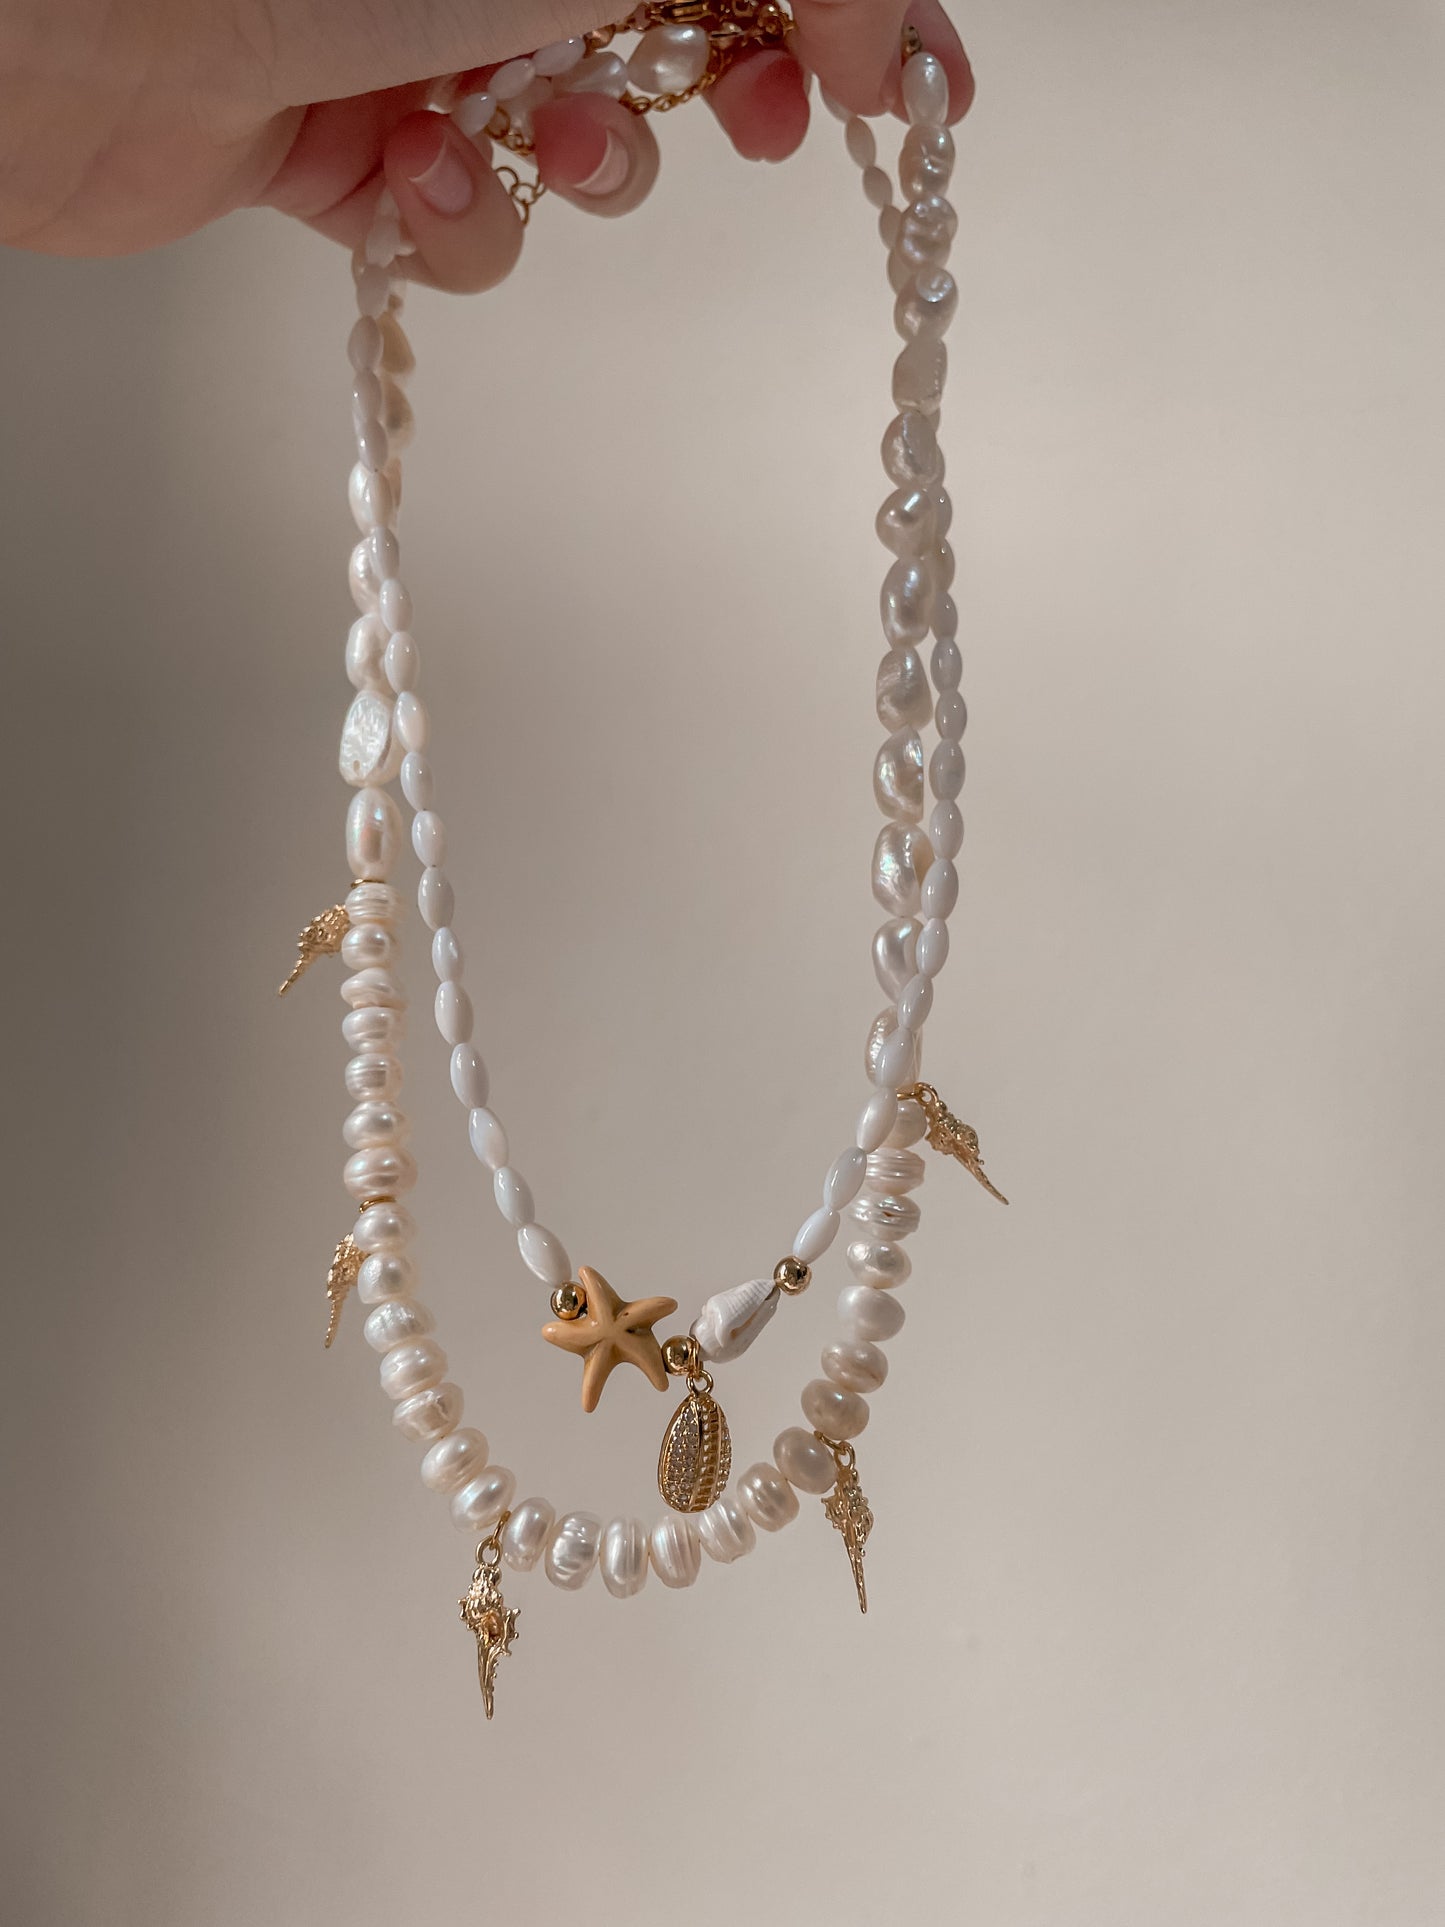 Caracoles y estrellas necklaces